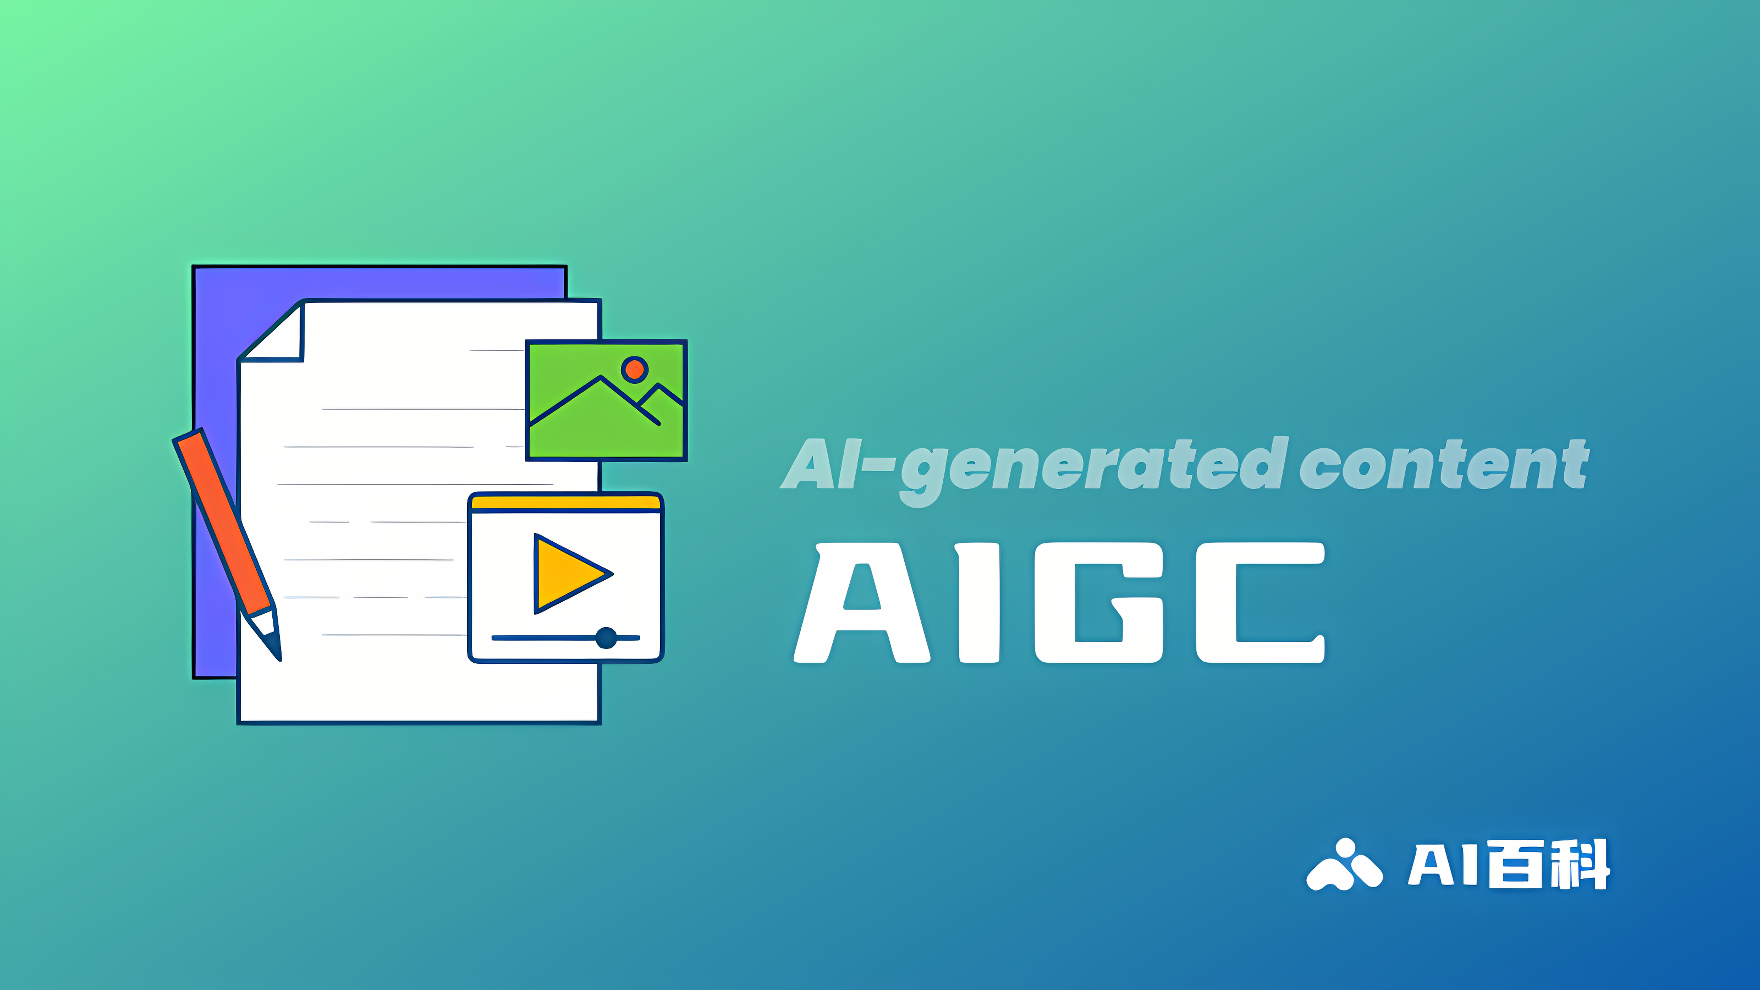 这是一张插图，展示了一些代表人工智能生成内容（AIGC）的符号，如文件、图片和视频图标，背景是渐变的绿蓝色。